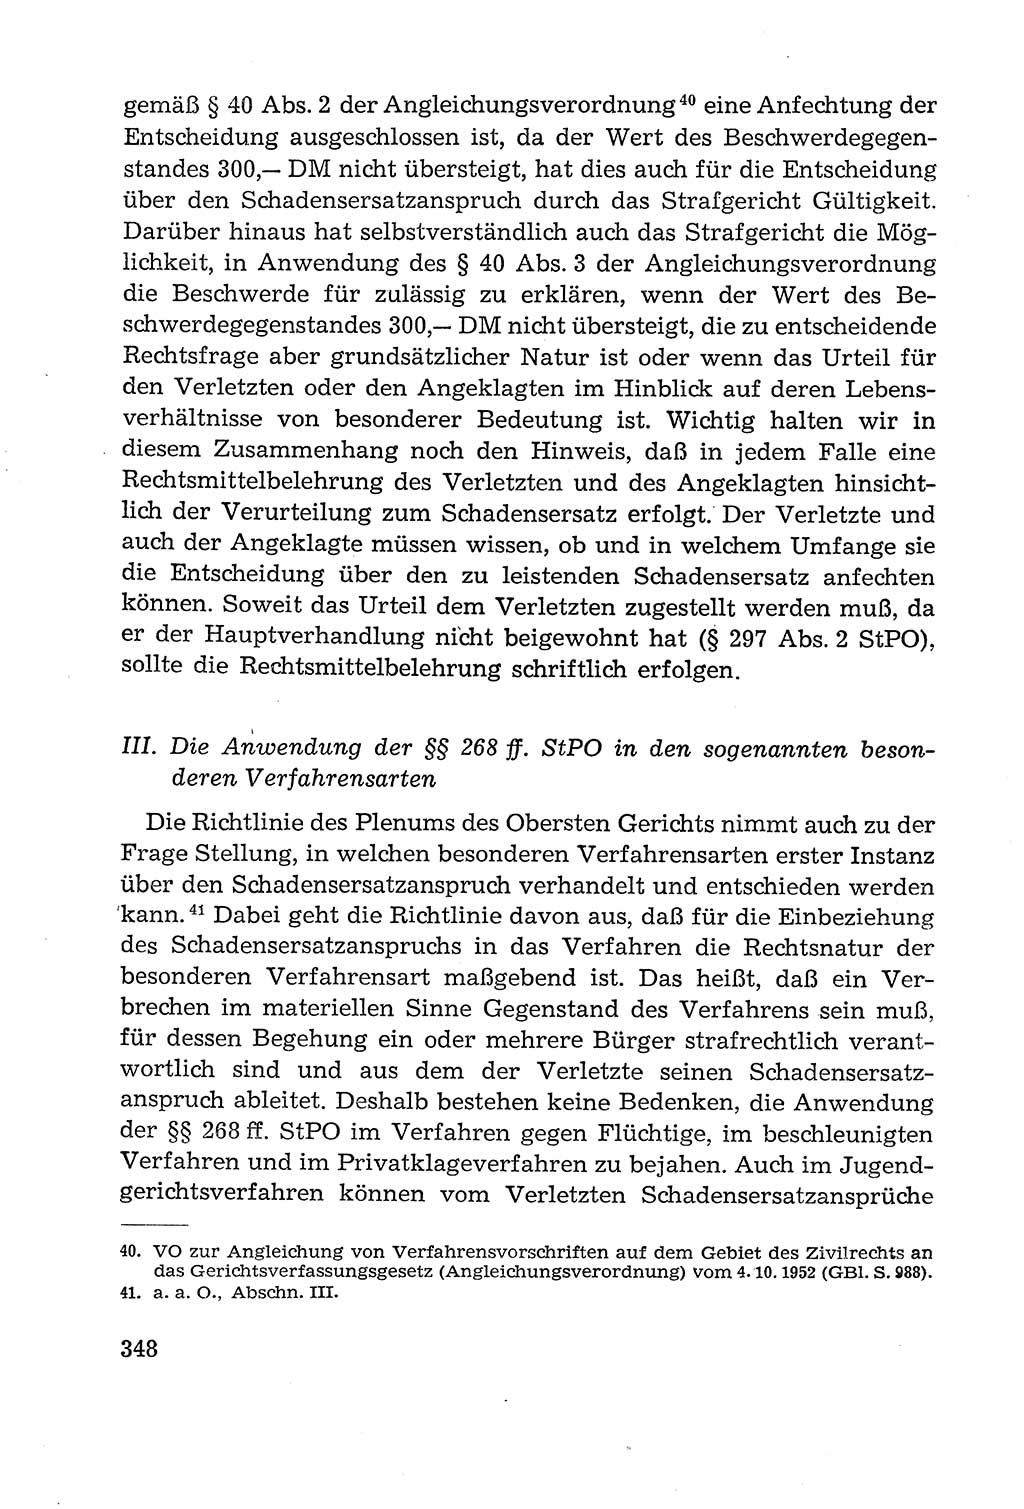 Leitfaden des Strafprozeßrechts der Deutschen Demokratischen Republik (DDR) 1959, Seite 348 (LF StPR DDR 1959, S. 348)